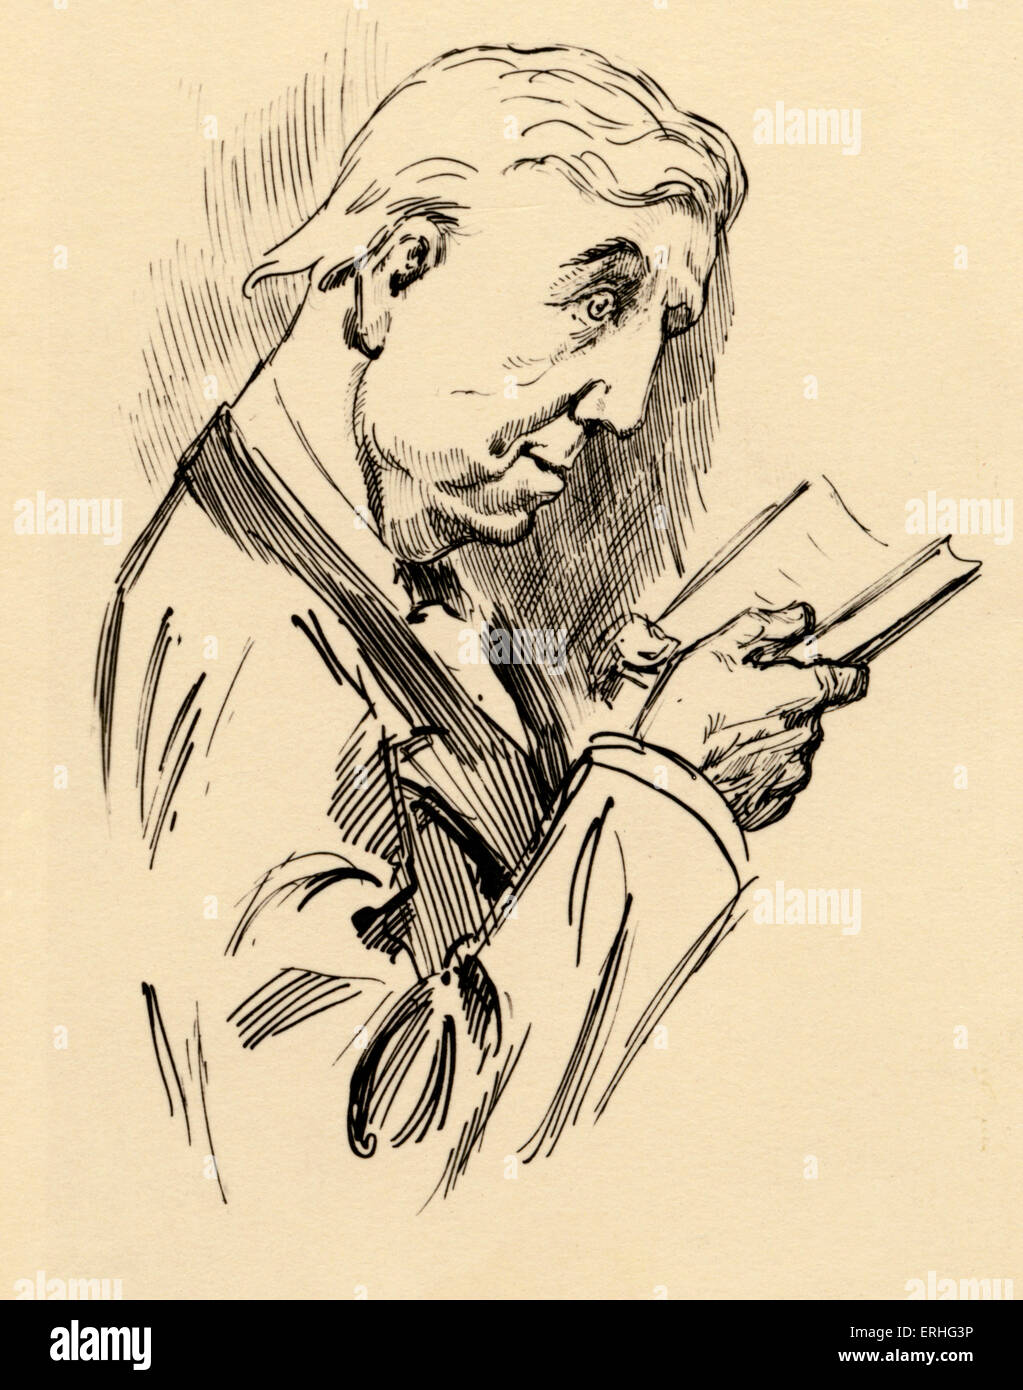 Lewis Carroll - portrait de l'auteur britannique de la lecture, de son vrai nom Charles Lutwidge Dodgson. 27 janvier 1832 - 14 janvier 1898. Banque D'Images